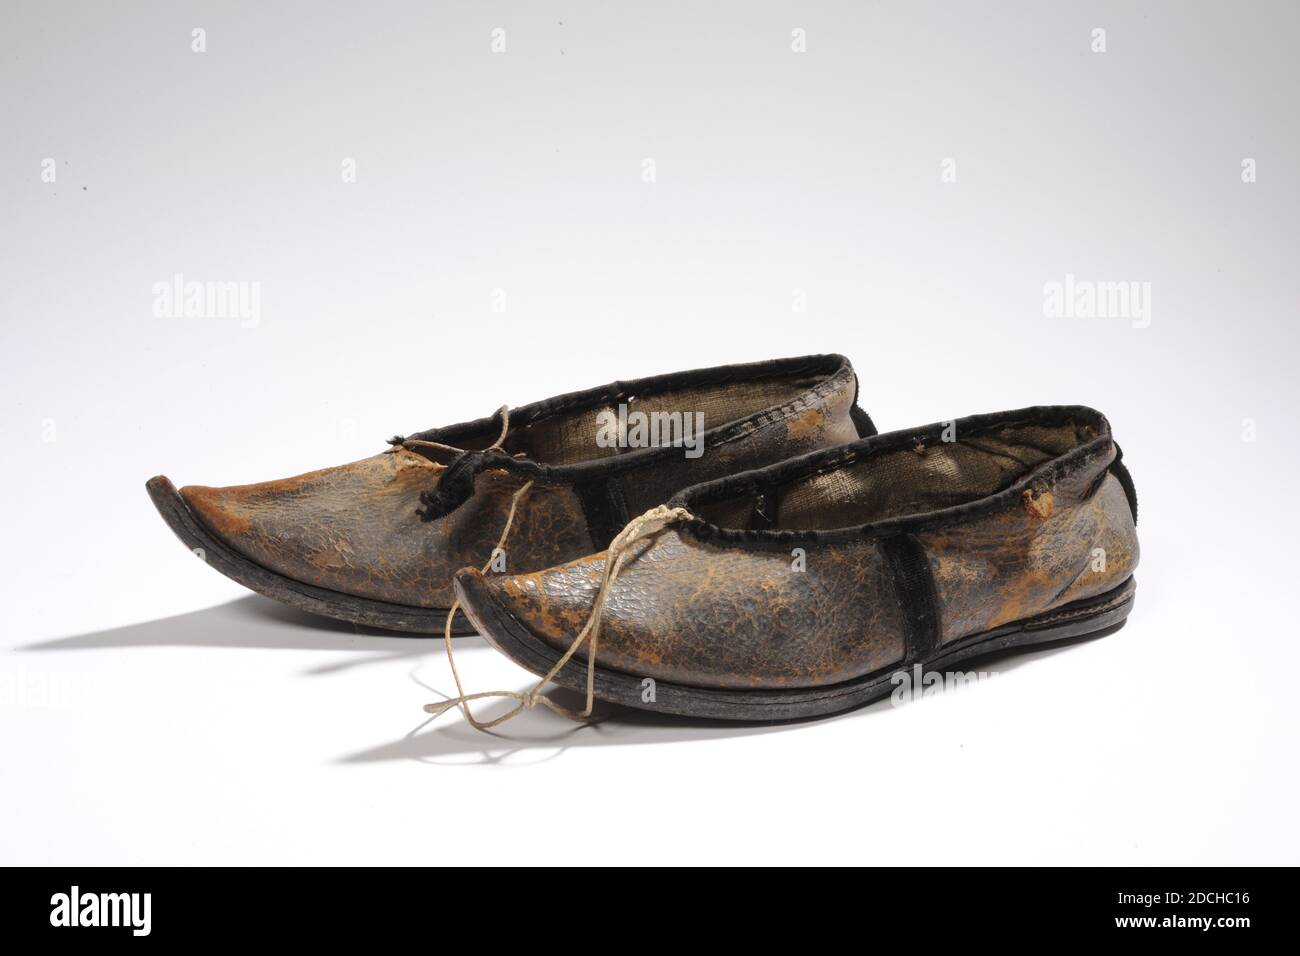 Anonyme, dernier quart du XVIIIe siècle, cuir, lin, velours, cousu,  chaussure A: 6 x 8 x 24,5 cm (60 x 80 x 245 mm), chaussure B: 6.8 x 8.5 x  24,5 cm (